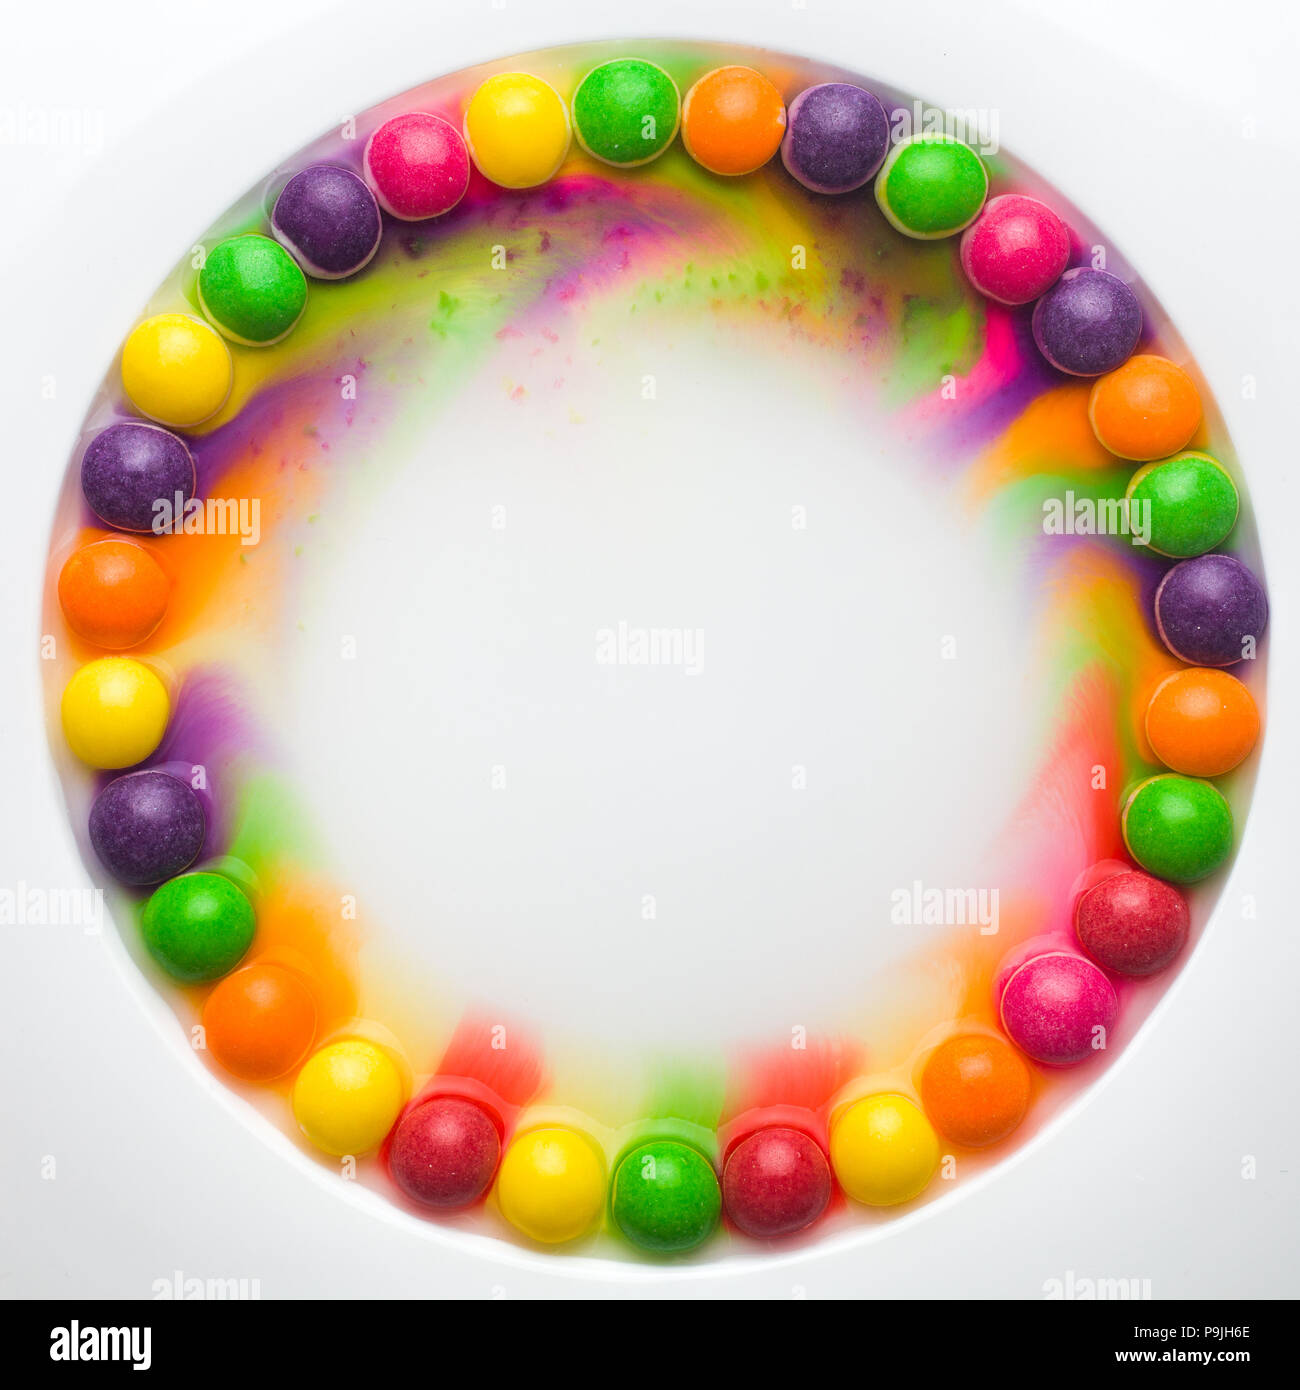 Cerchio di vetrate colorate caramelle su sfondo bianco. caramelle fusione in diverse righe, formando un arcobaleno Foto Stock